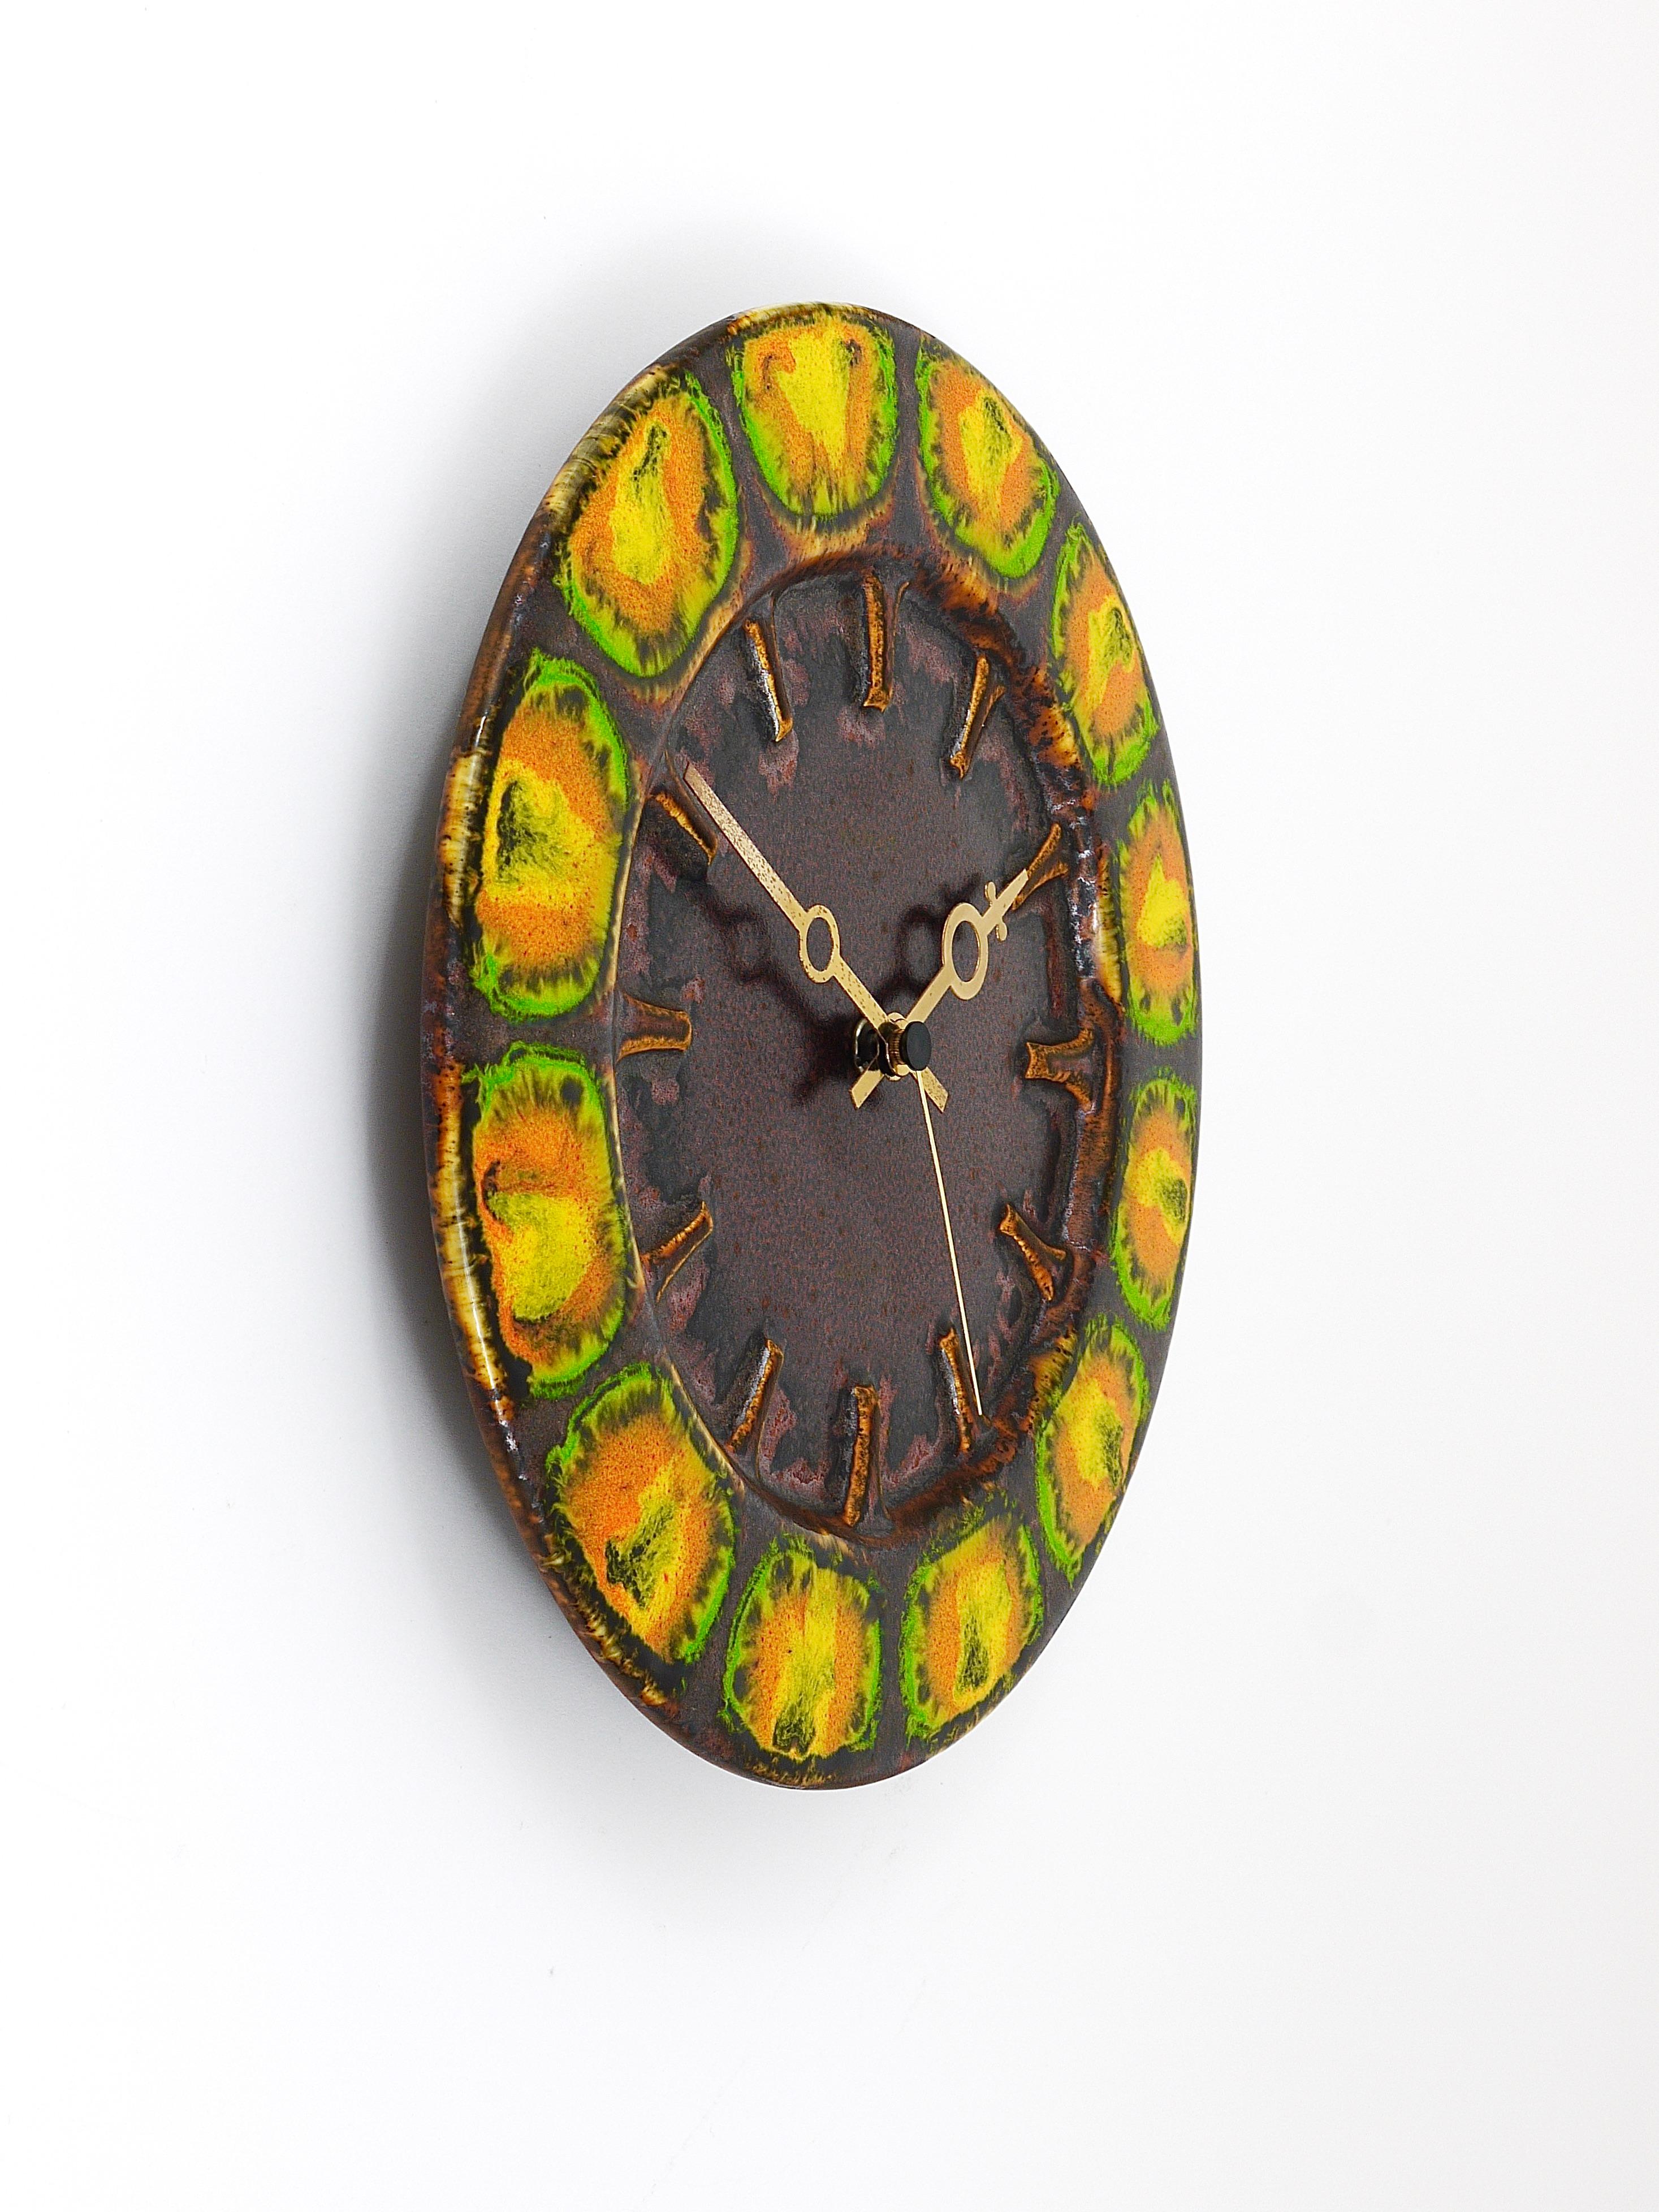 Eine schöne runde Midcentury Brutalist Wanduhr, ausgeführt von Kienzle Deutschland in den 1970er Jahren. Die Uhr hat ein Gehäuse aus Keramik mit einer farbenfrohen Emaille-Glasur in Braun, Grün, Gelb und Orange und stilvolle goldene Zeiger.